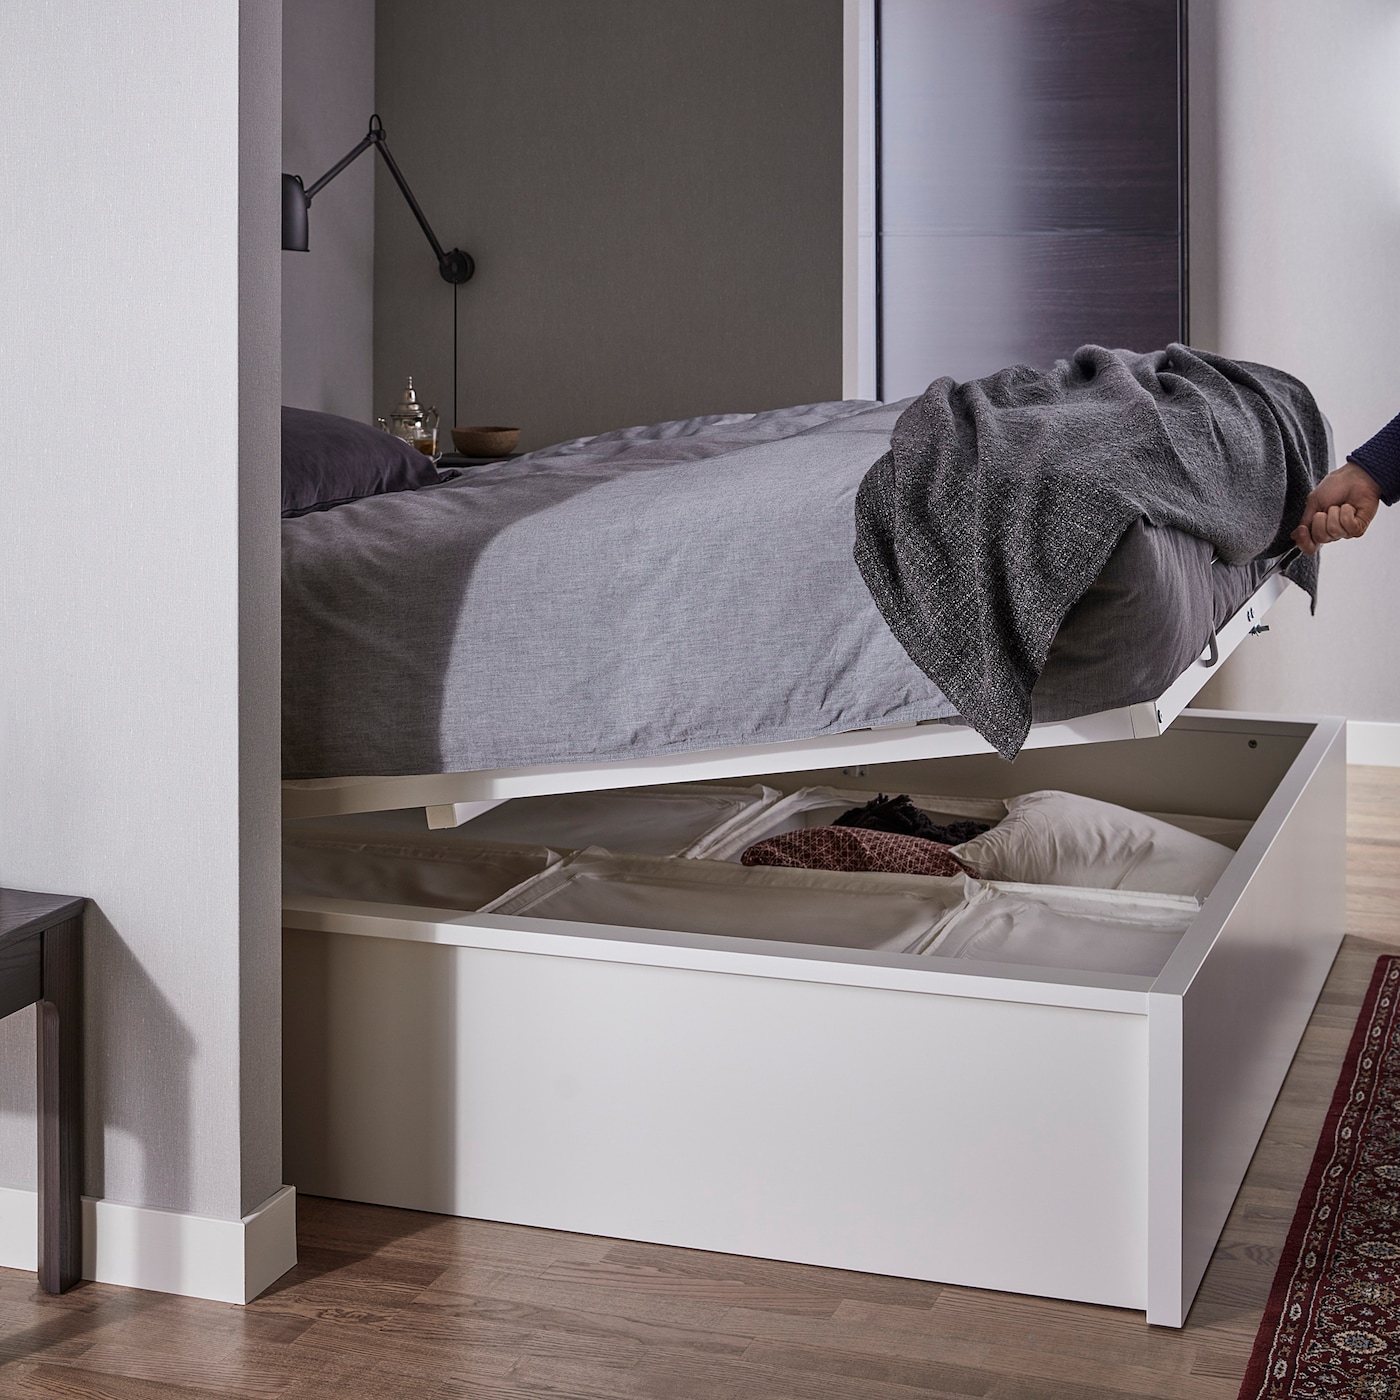 Malm МАЛЬМ кровать с подъемным механизмом белый 160x200 см